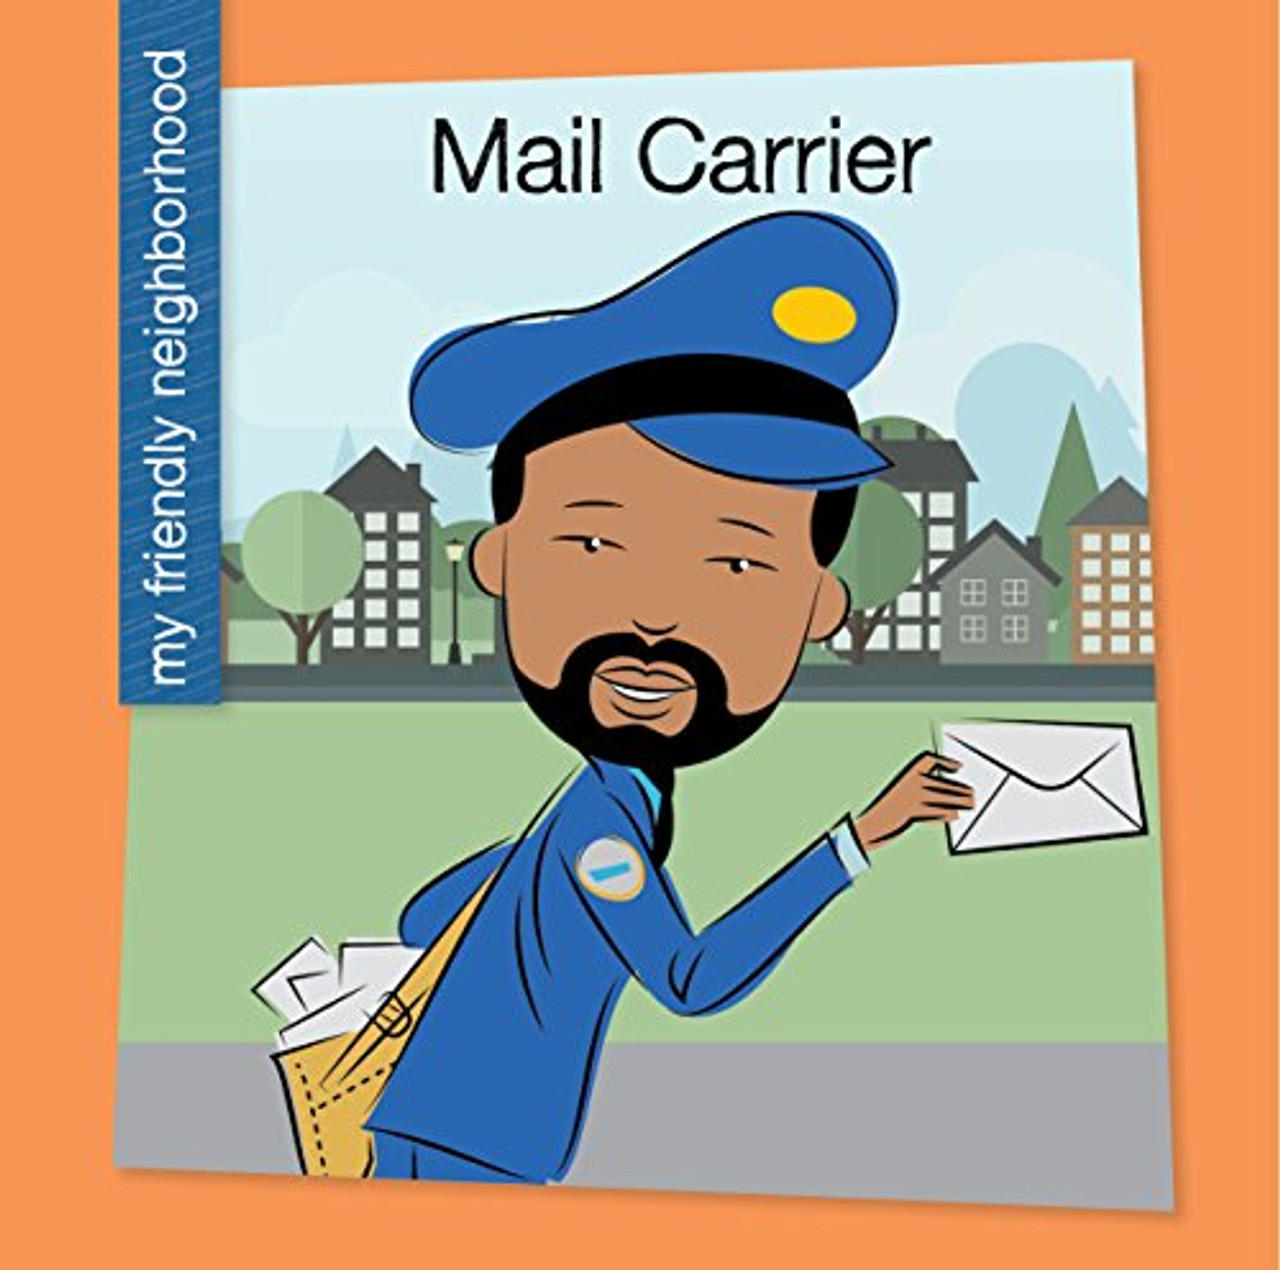 Mail Carrier by Czeena Devera